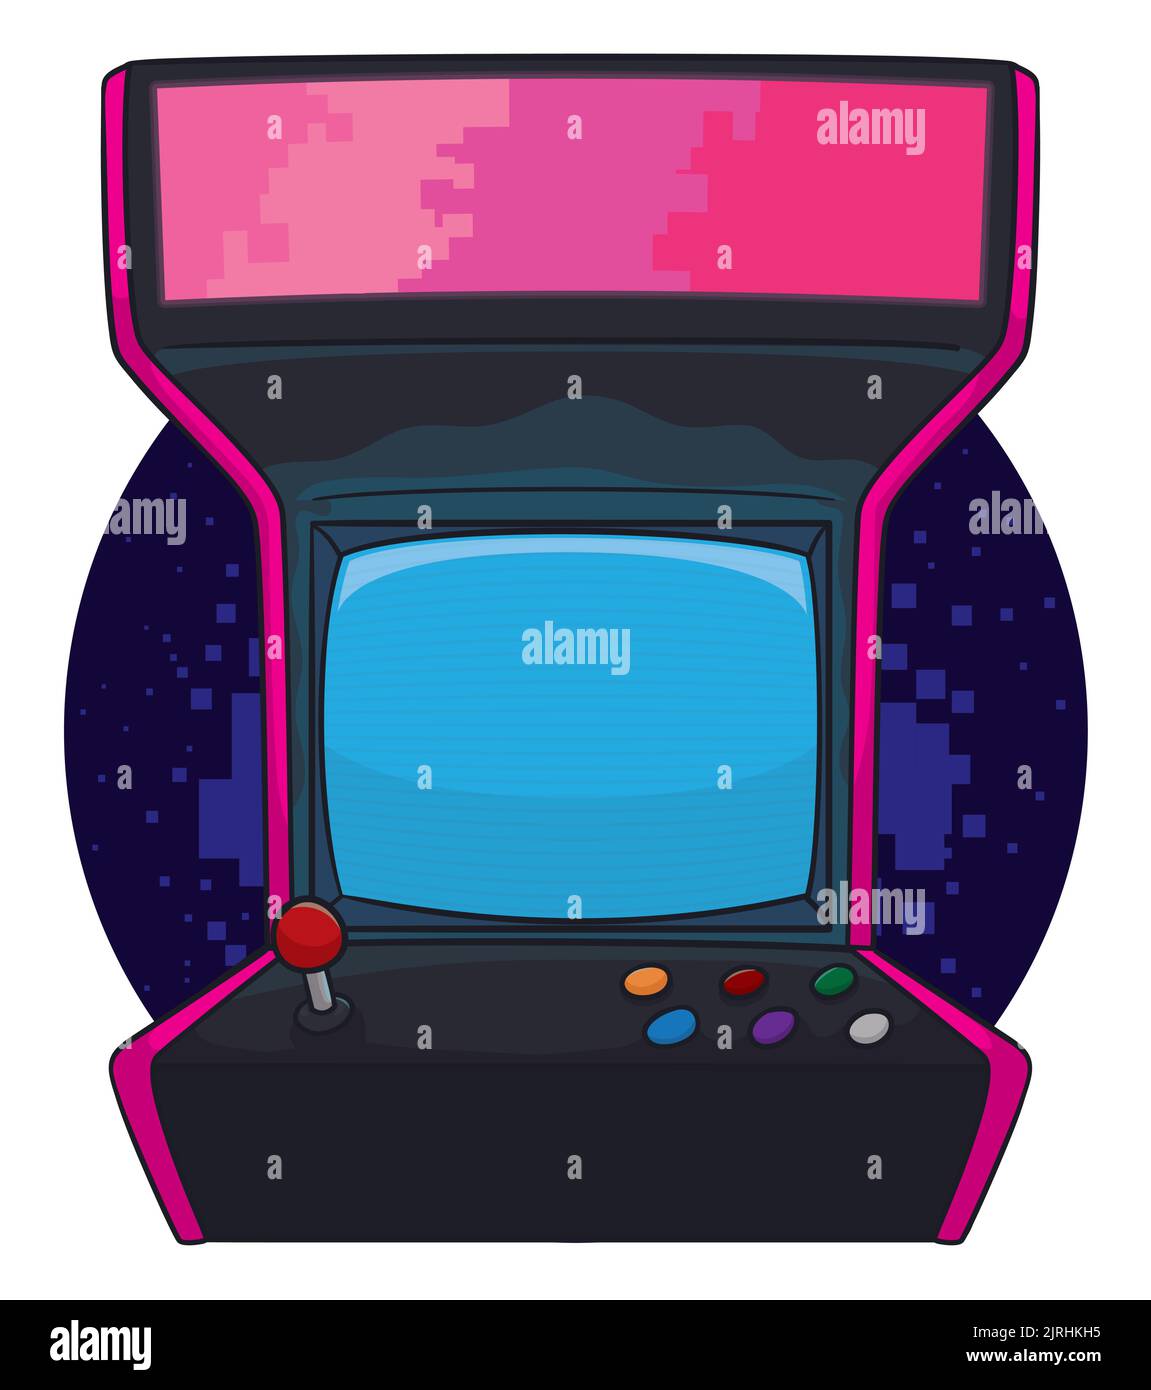 Design im Cartoon-Stil eines Vintage-Arcade-Videospiel, mit Joystick, Tasten und Bildschirm, auch das Gehäuse mit Pixeln gefärbt. Stock Vektor